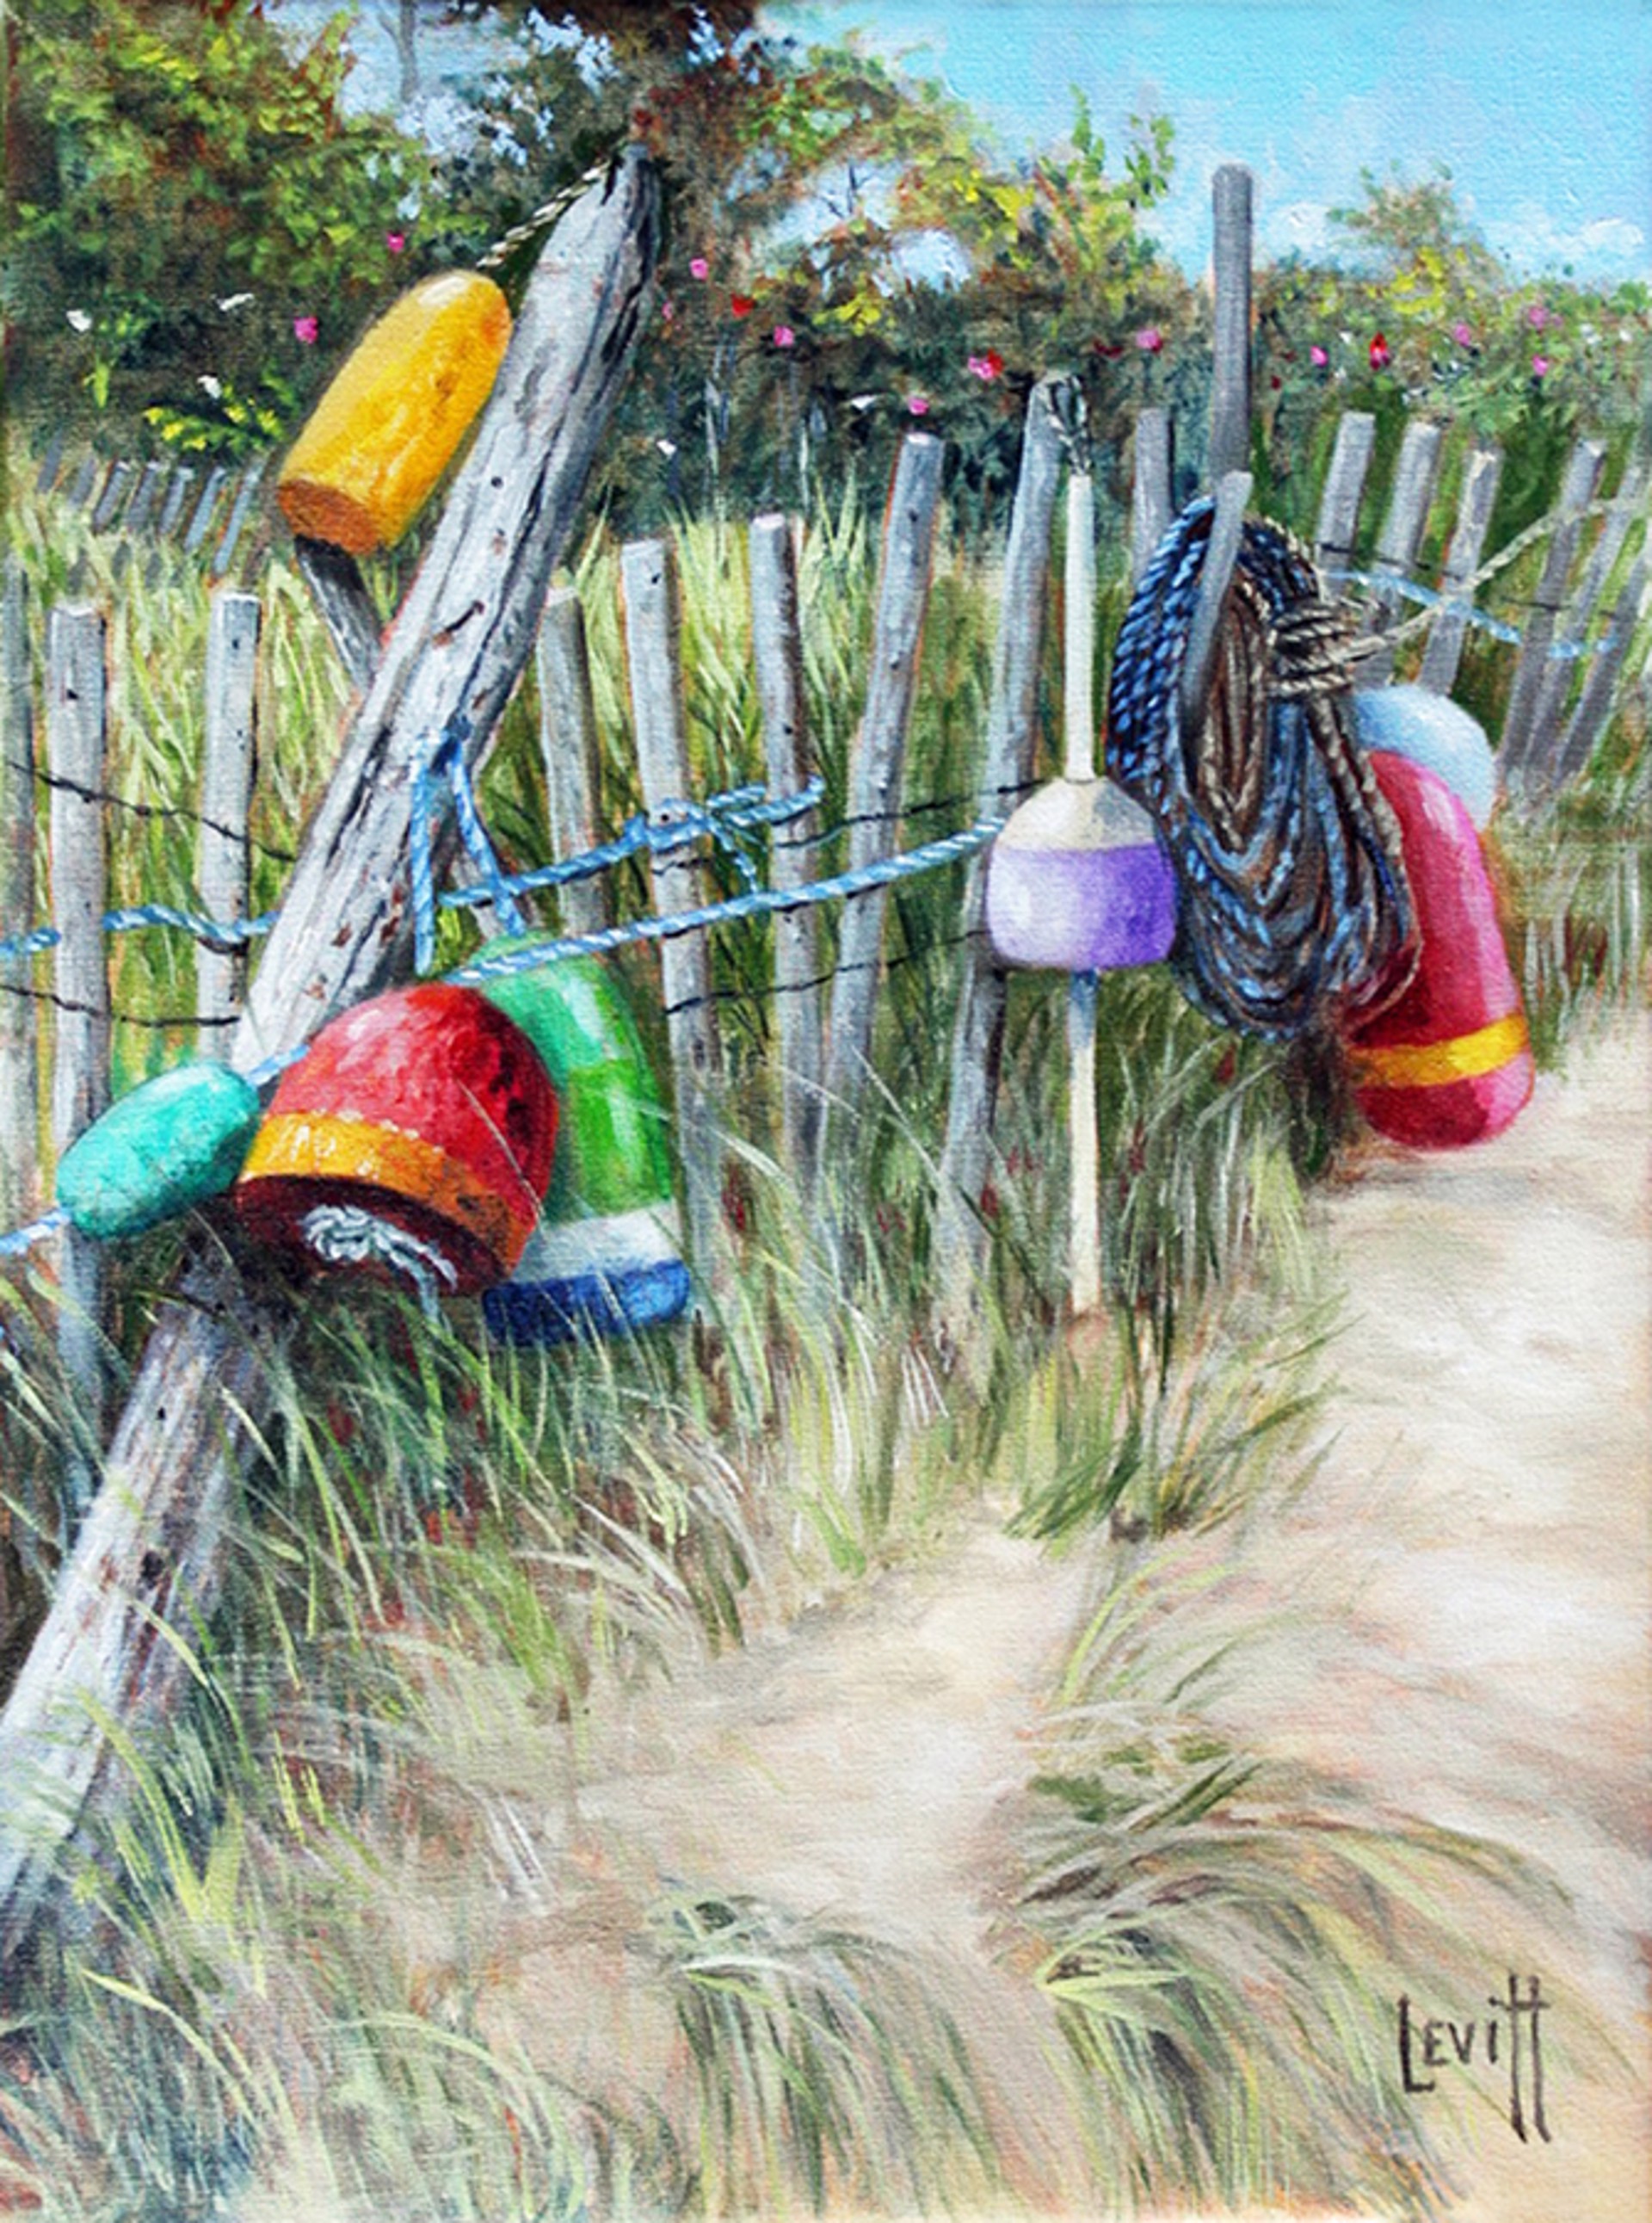 Buoys On A Fence by Barney Levitt